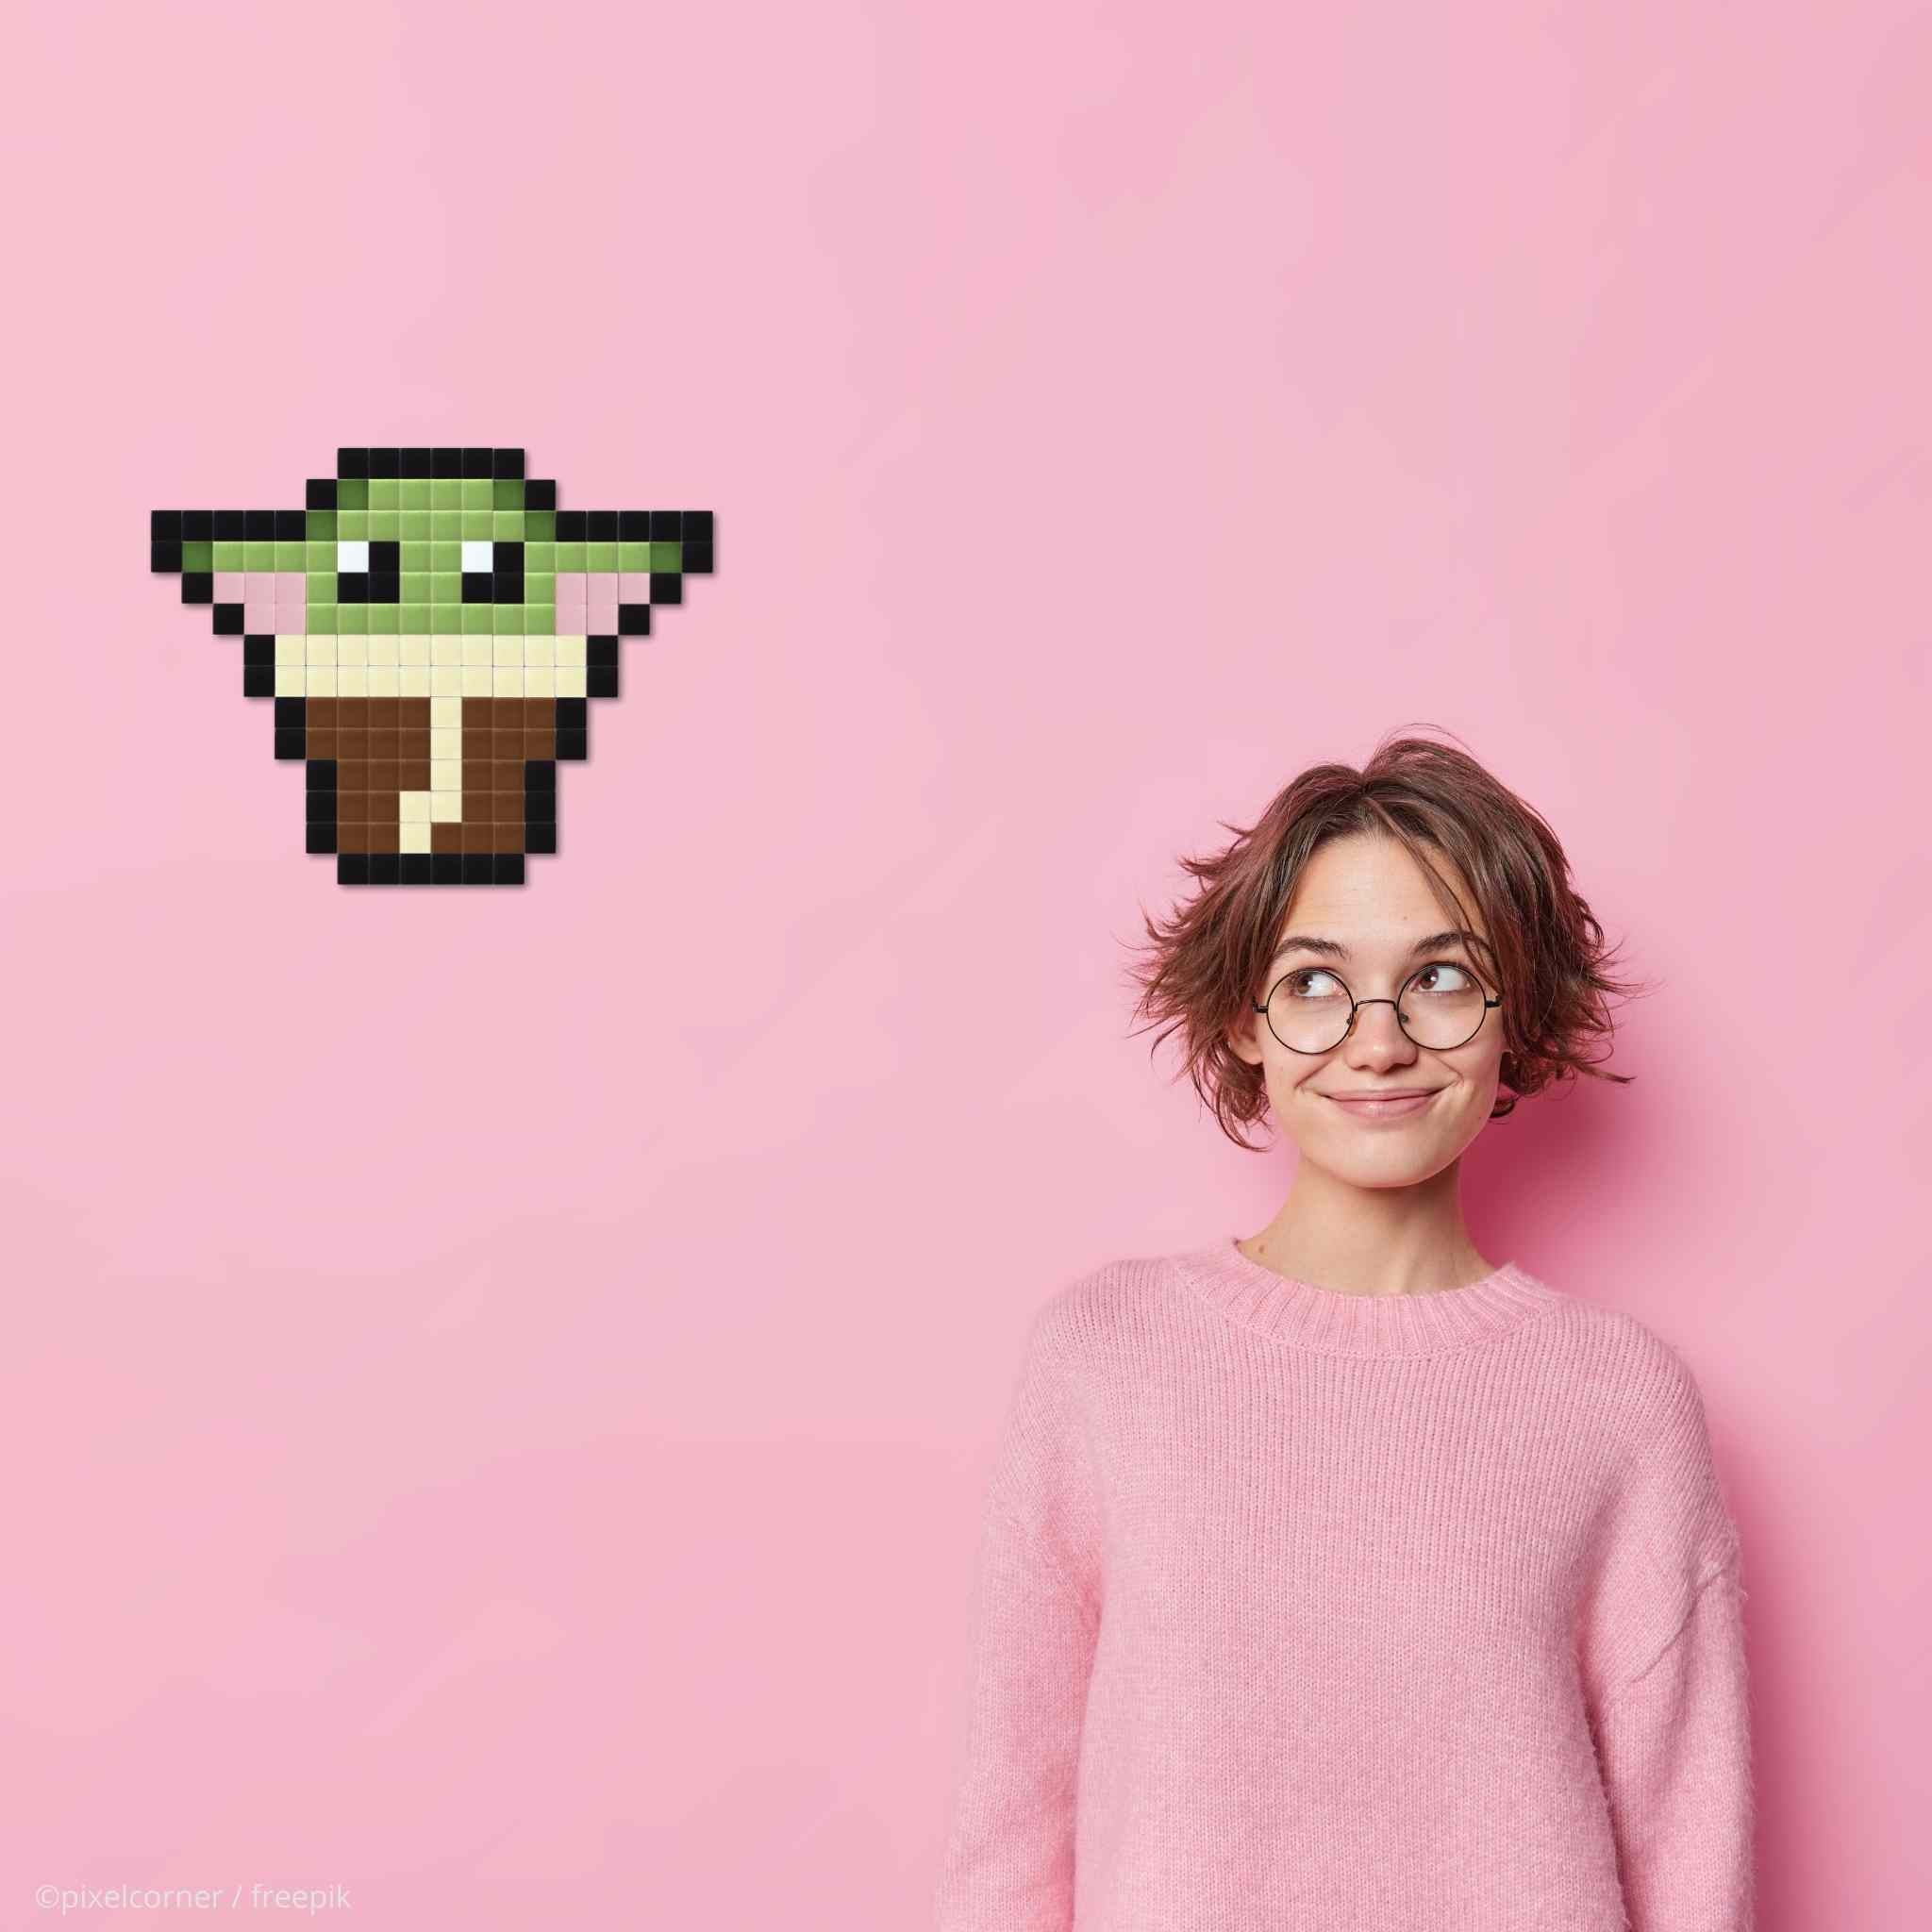 Pixel Art Kit "Baba Yodi" par Pixel Corner - Kits de loisirs créatifs